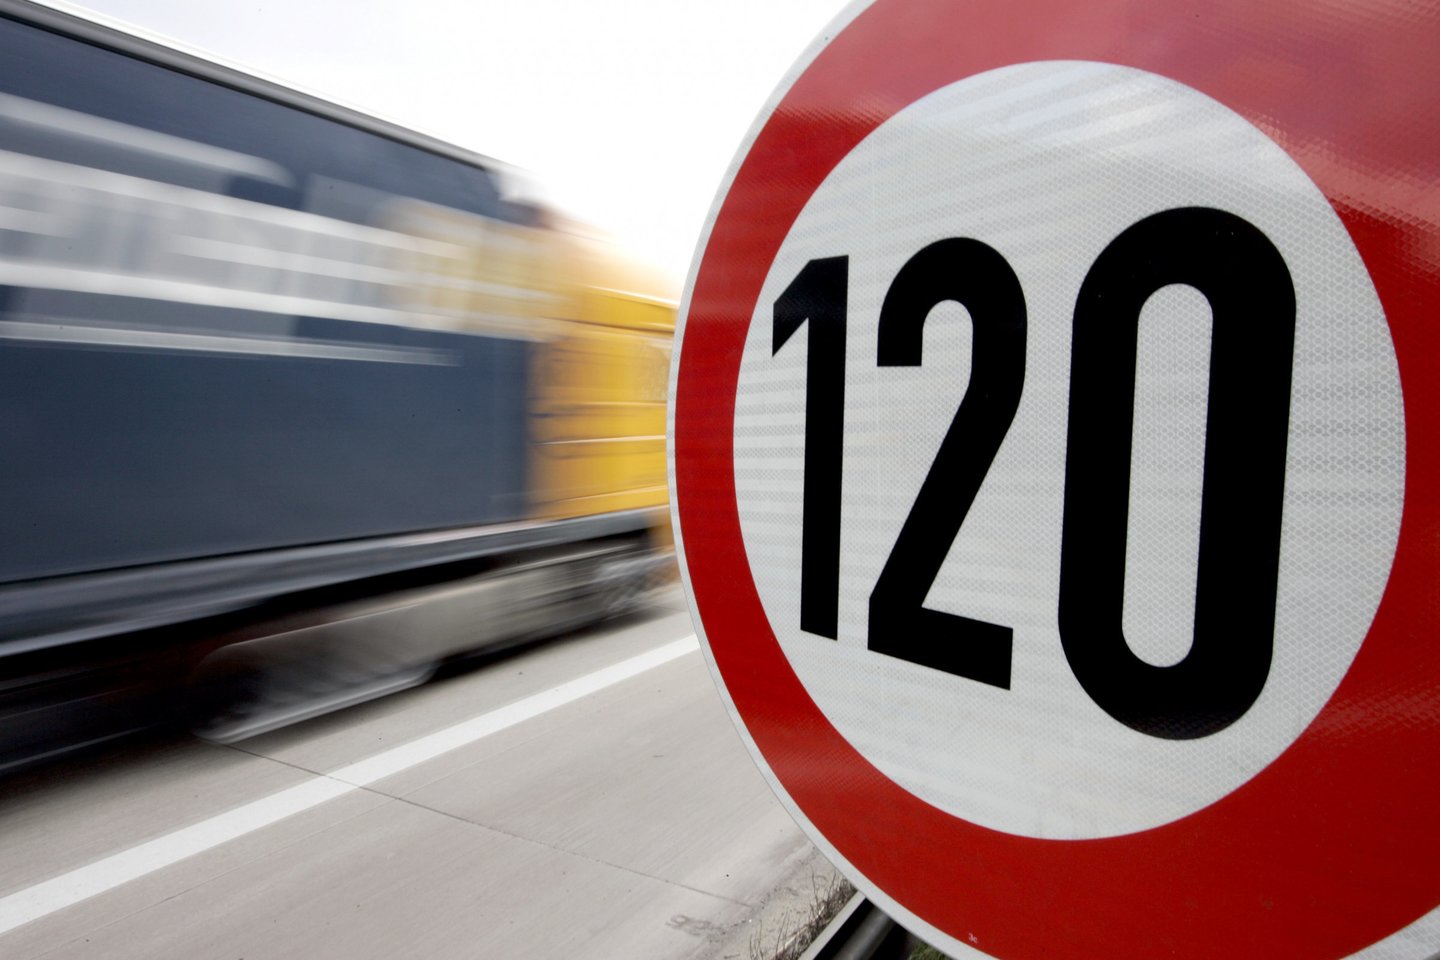   Tarp dviejų didžiausių Lietuvos miestų keliaujantys vairuotojai jau seniai laukia, kada šiai atkarpai bus suteiktas automagistralės statusas, kuris leistų maksimalų greitį padidinti iki 130 km/val. <br>Reuters/Scanpix nuotr.